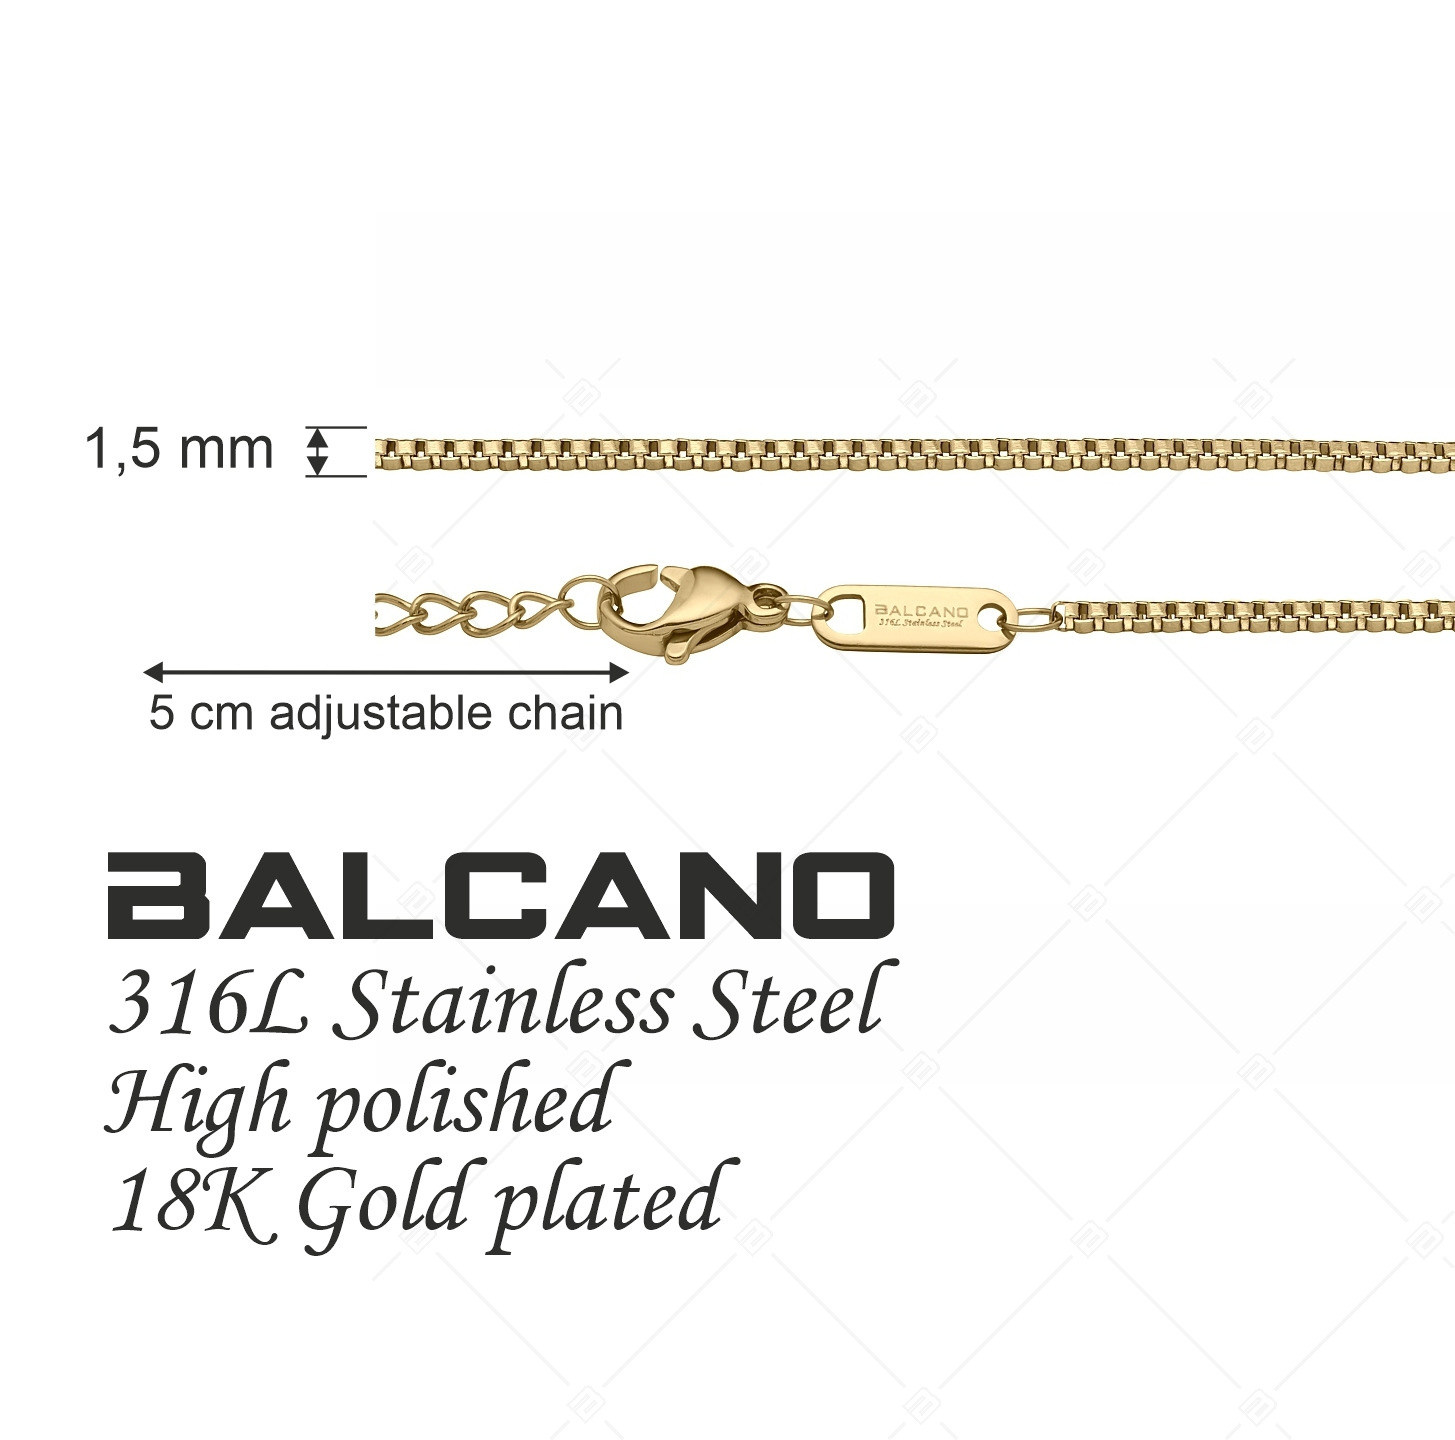 BALCANO - Venetian / Stainless Steel Venetian Chain, 18K Gold Plated - 1,5 mm (341292BC88)